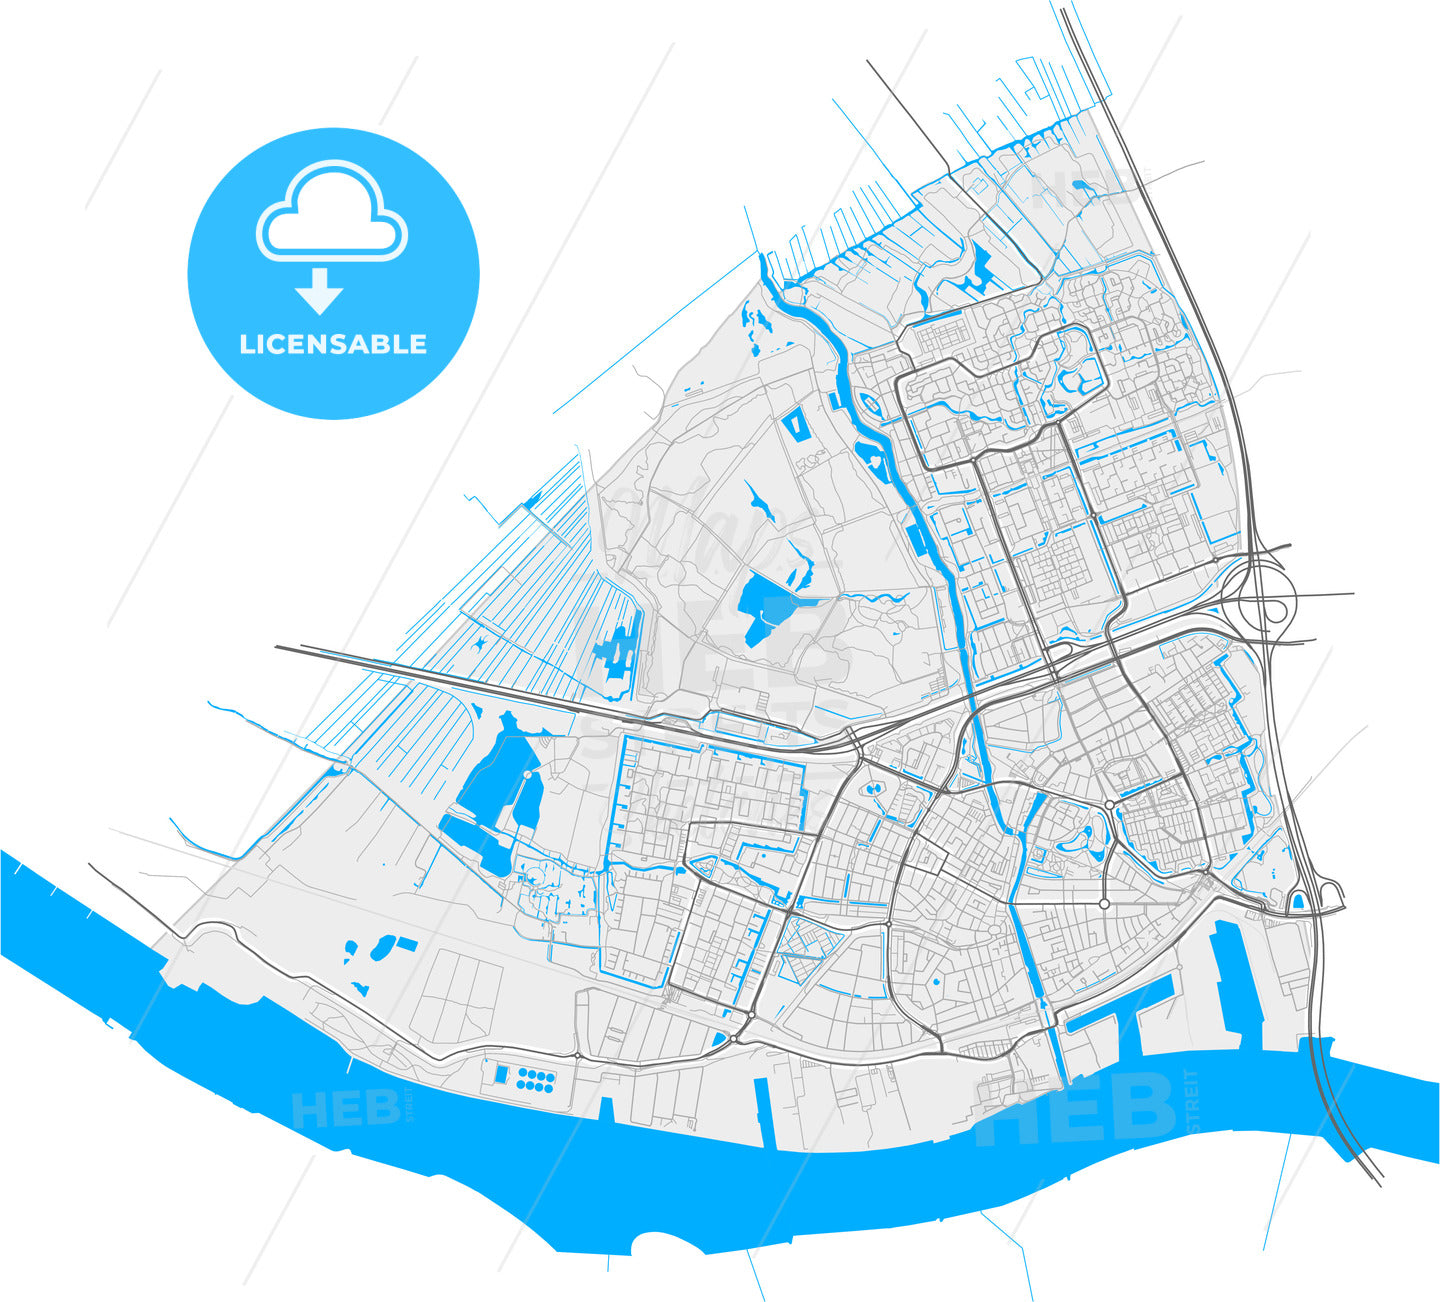 Vlaardingen, South Holland, Netherlands, high quality vector map